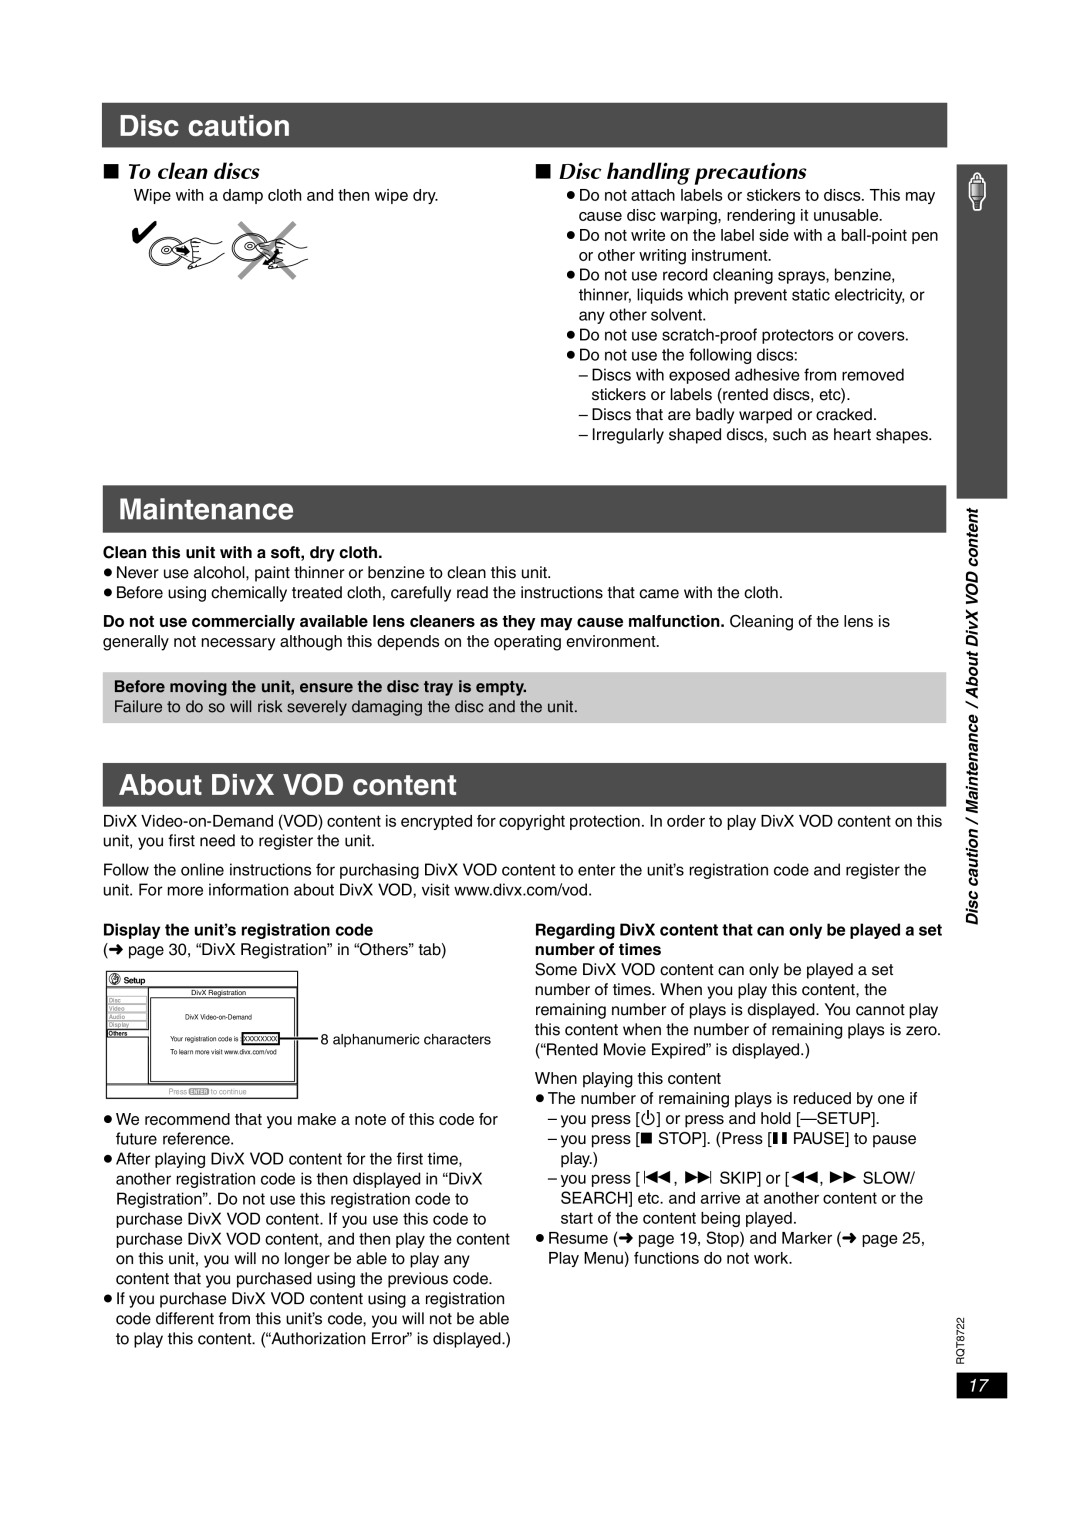 Panasonic SC-HT990 Disc caution, Maintenance, About DivX VOD content, ∫ To clean discs, ∫ Disc handling precautions 